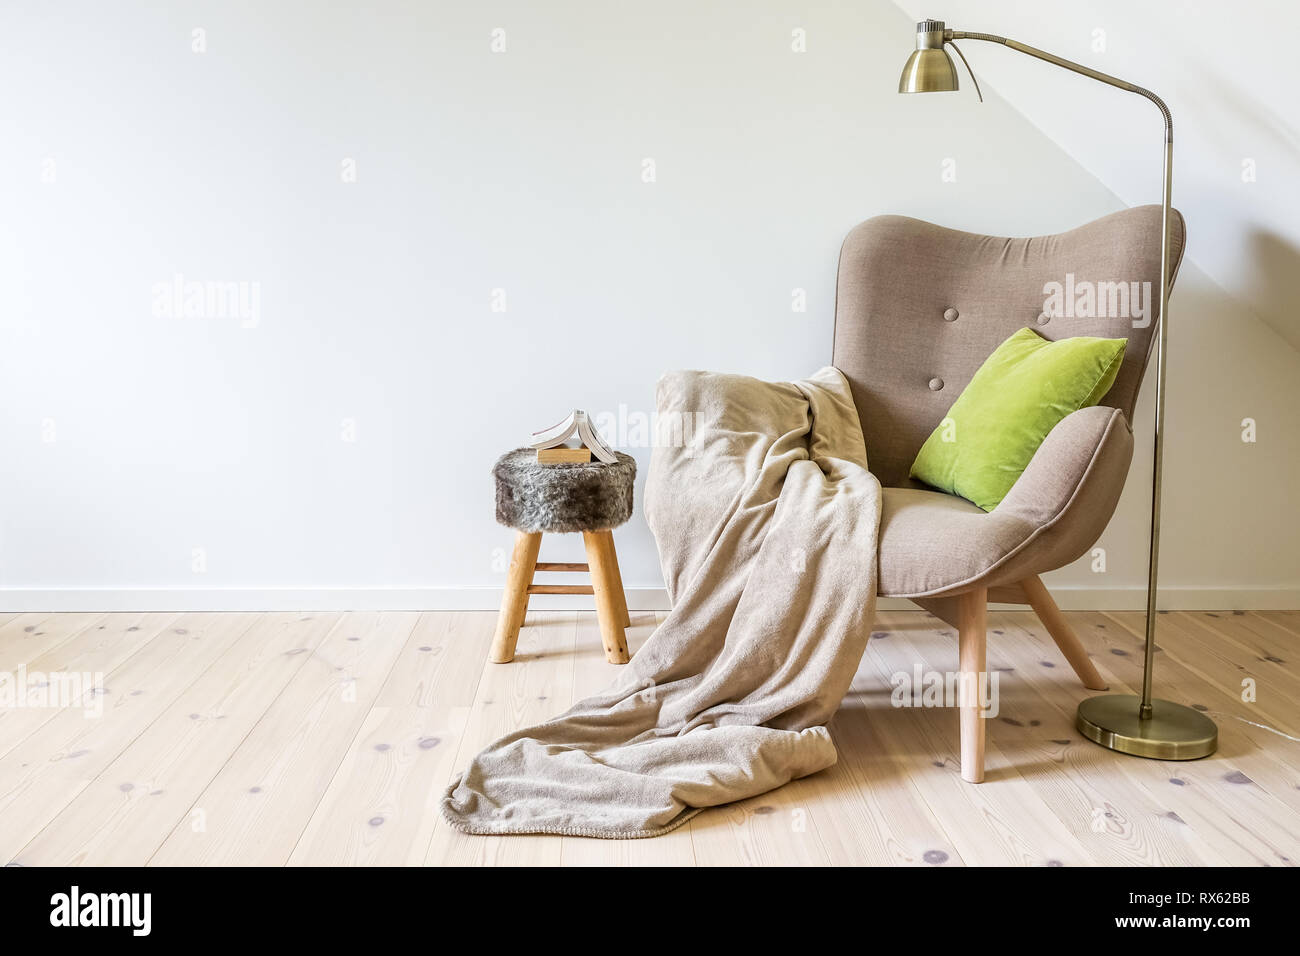 Una lettura sedia / poltrona con una lampada, una coperta e un libro aperto. Parete bianca e vuota in un semplice soggiorno interno. Spazio di copia Foto Stock